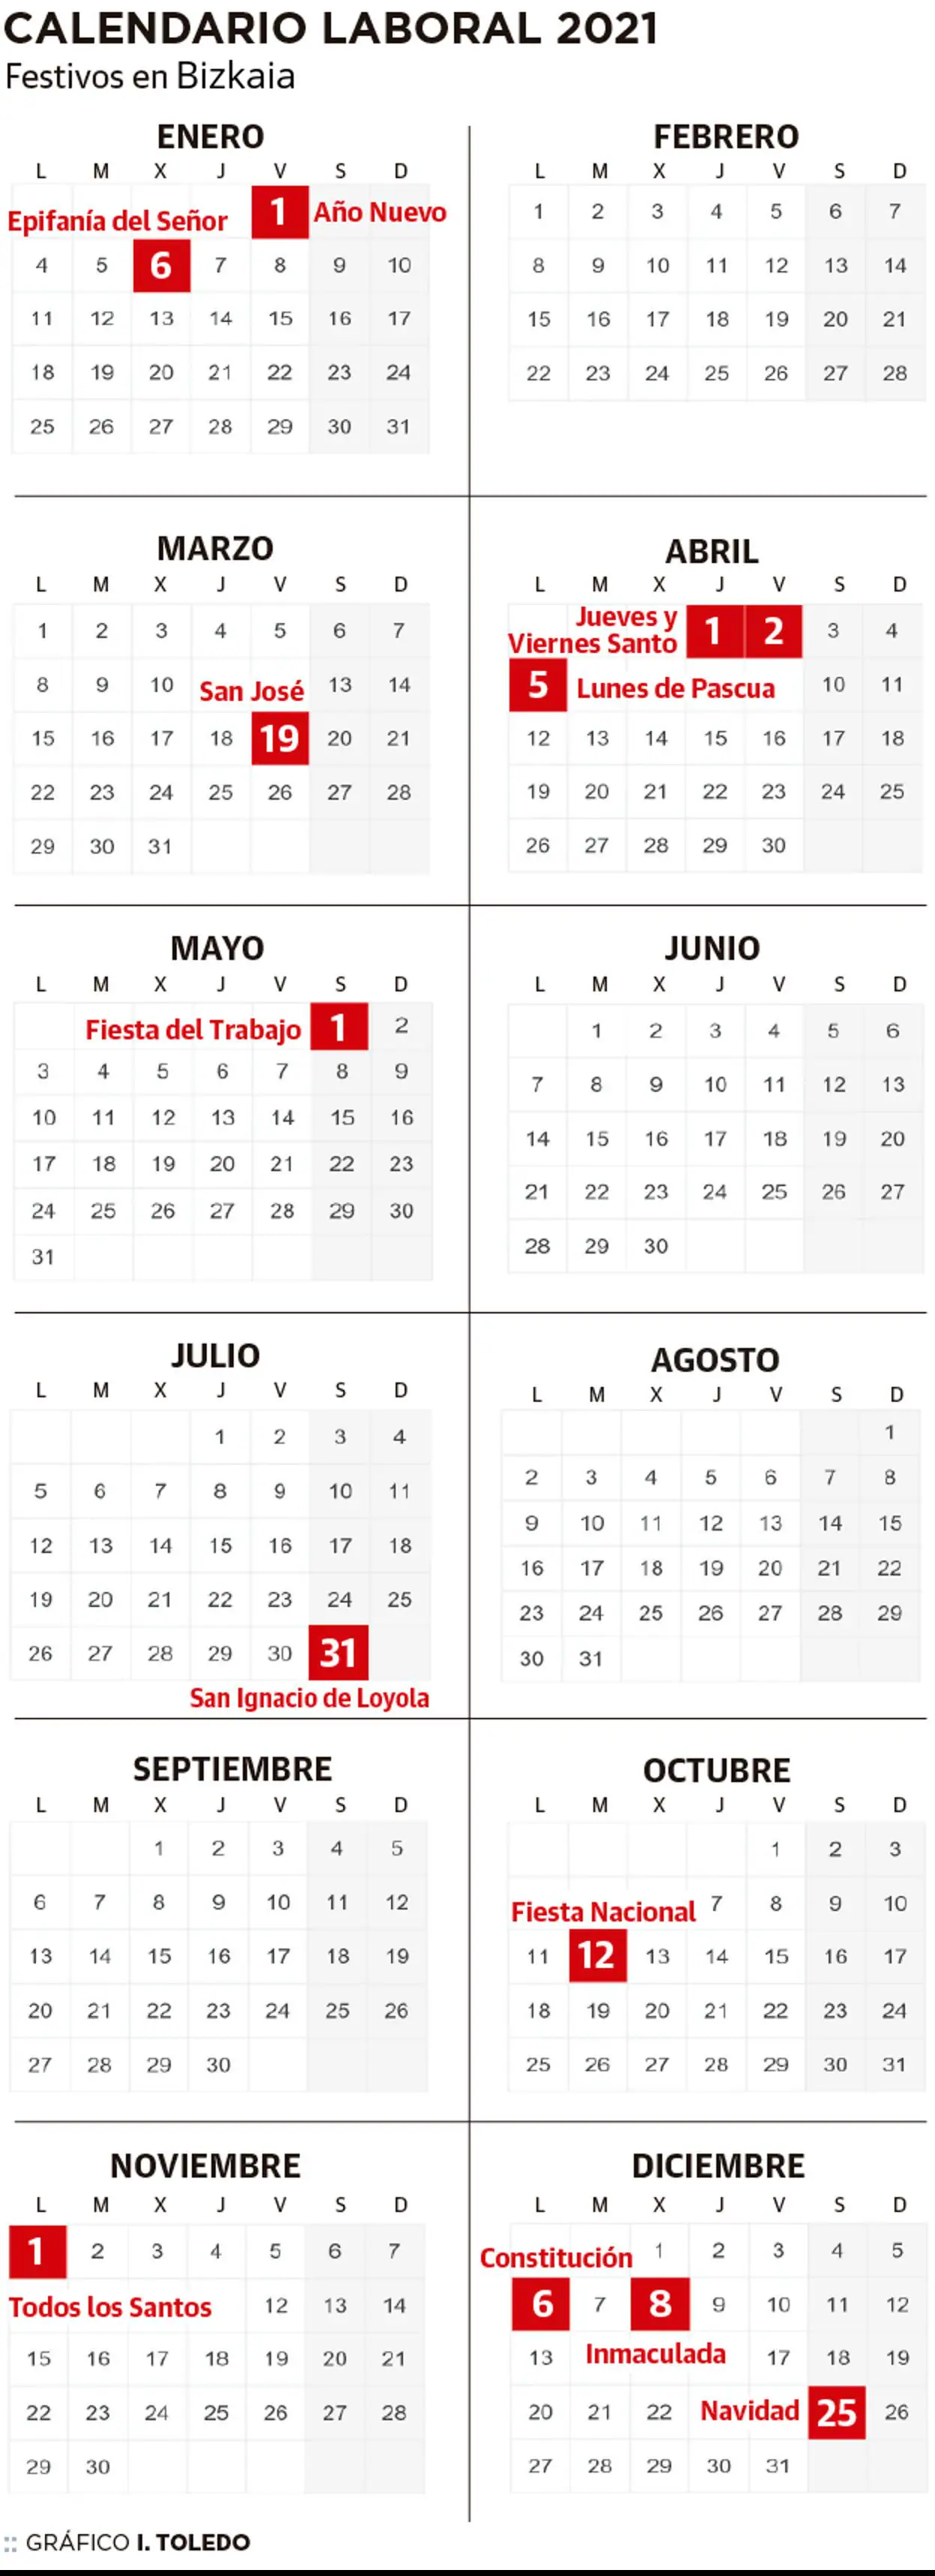 Calendario laboral de Bizkaia 2021 El Correo